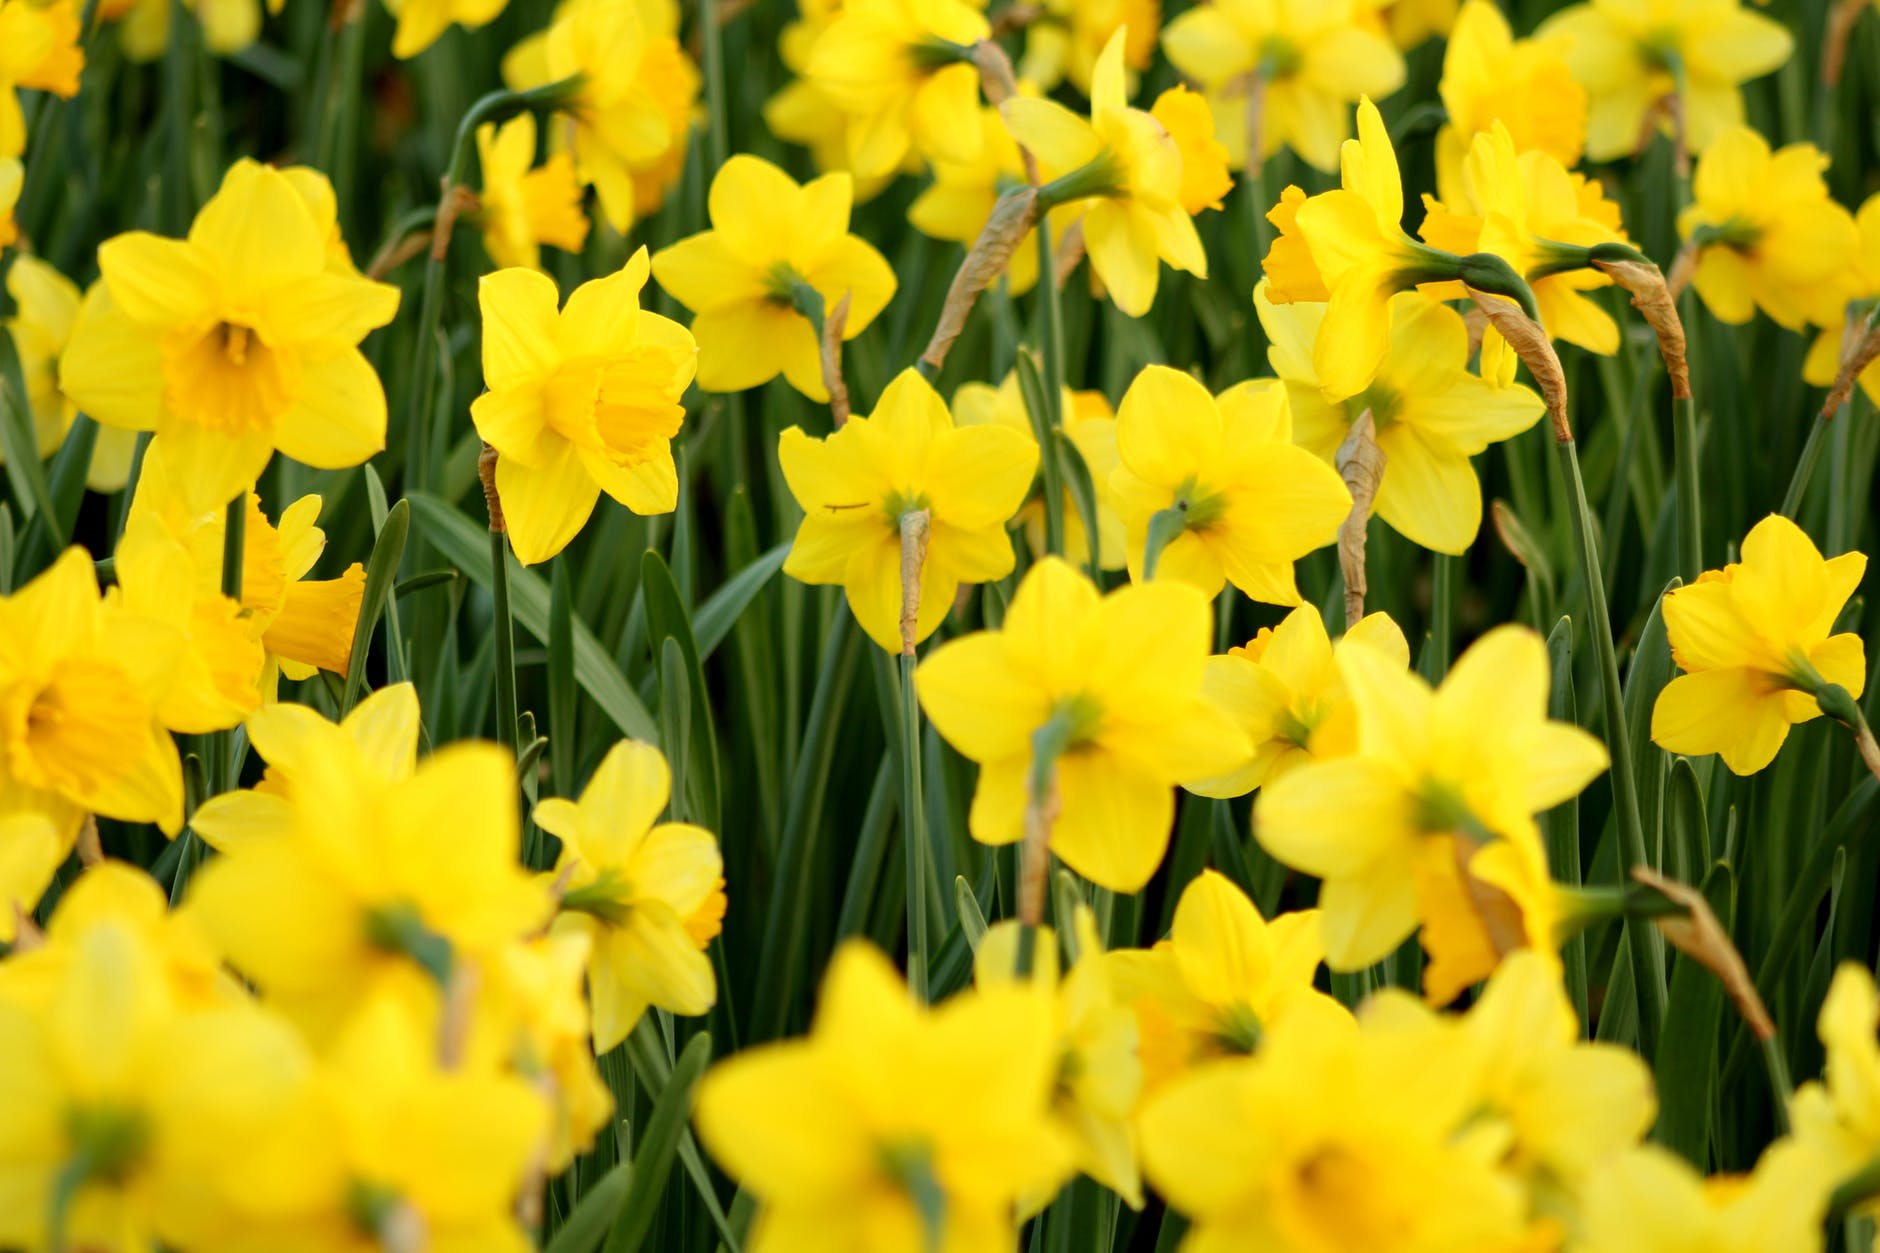 wordsworth daffodils